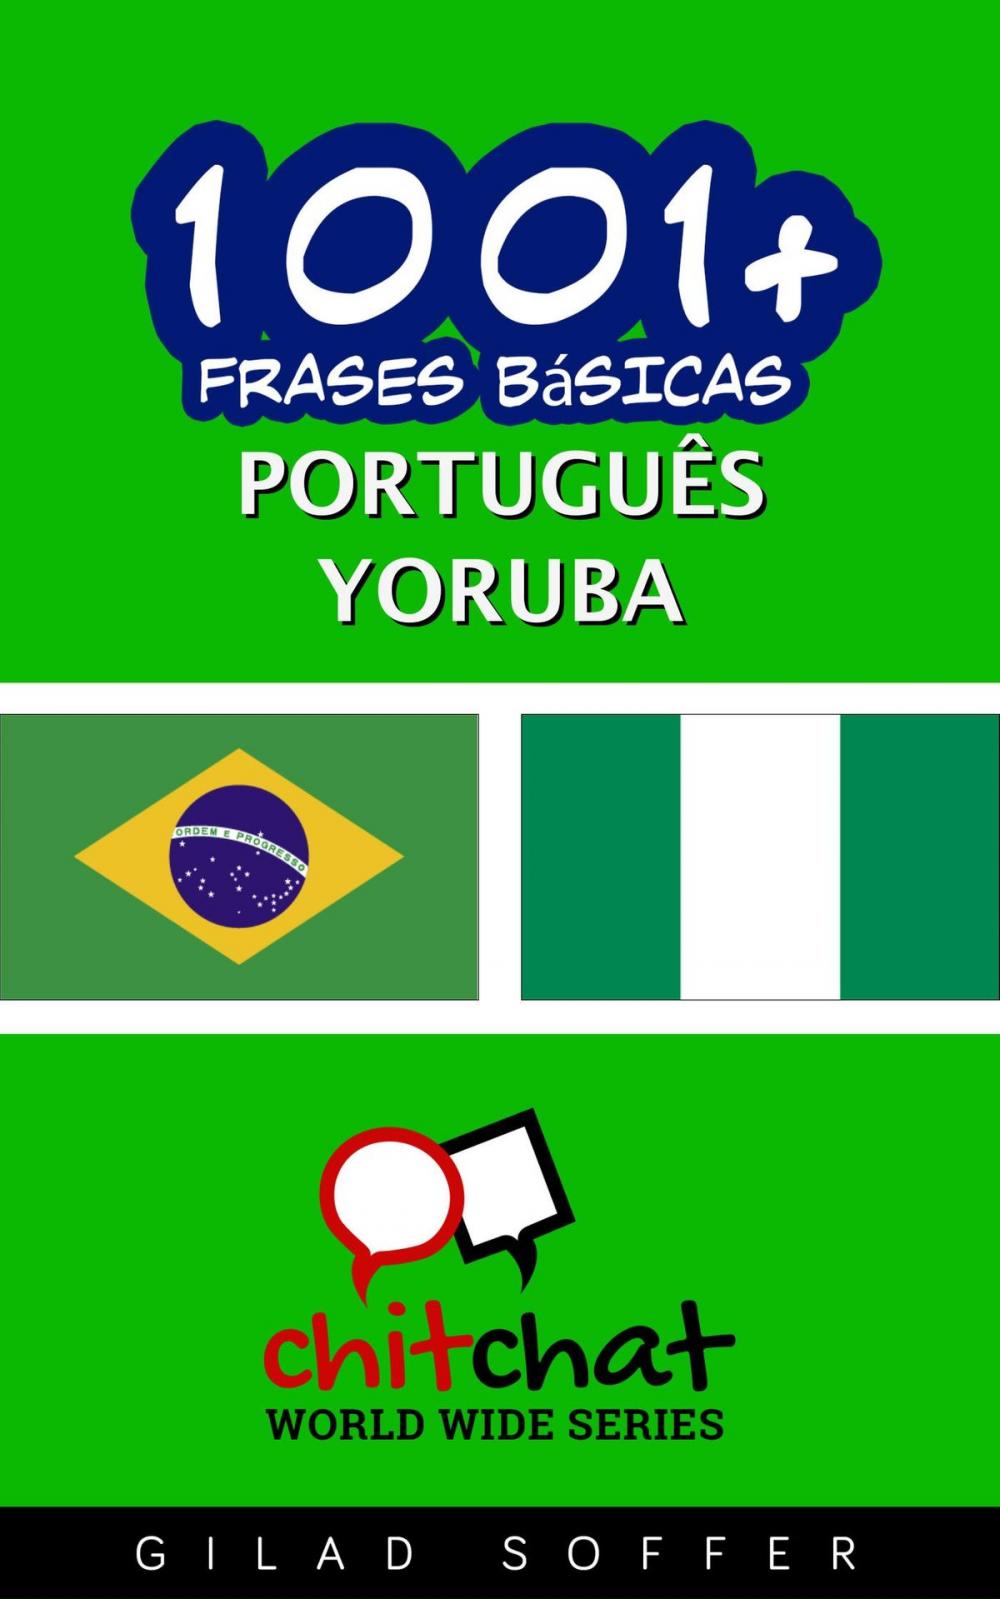 Big bigCover of 1001+ Frases Básicas Português - Yoruba